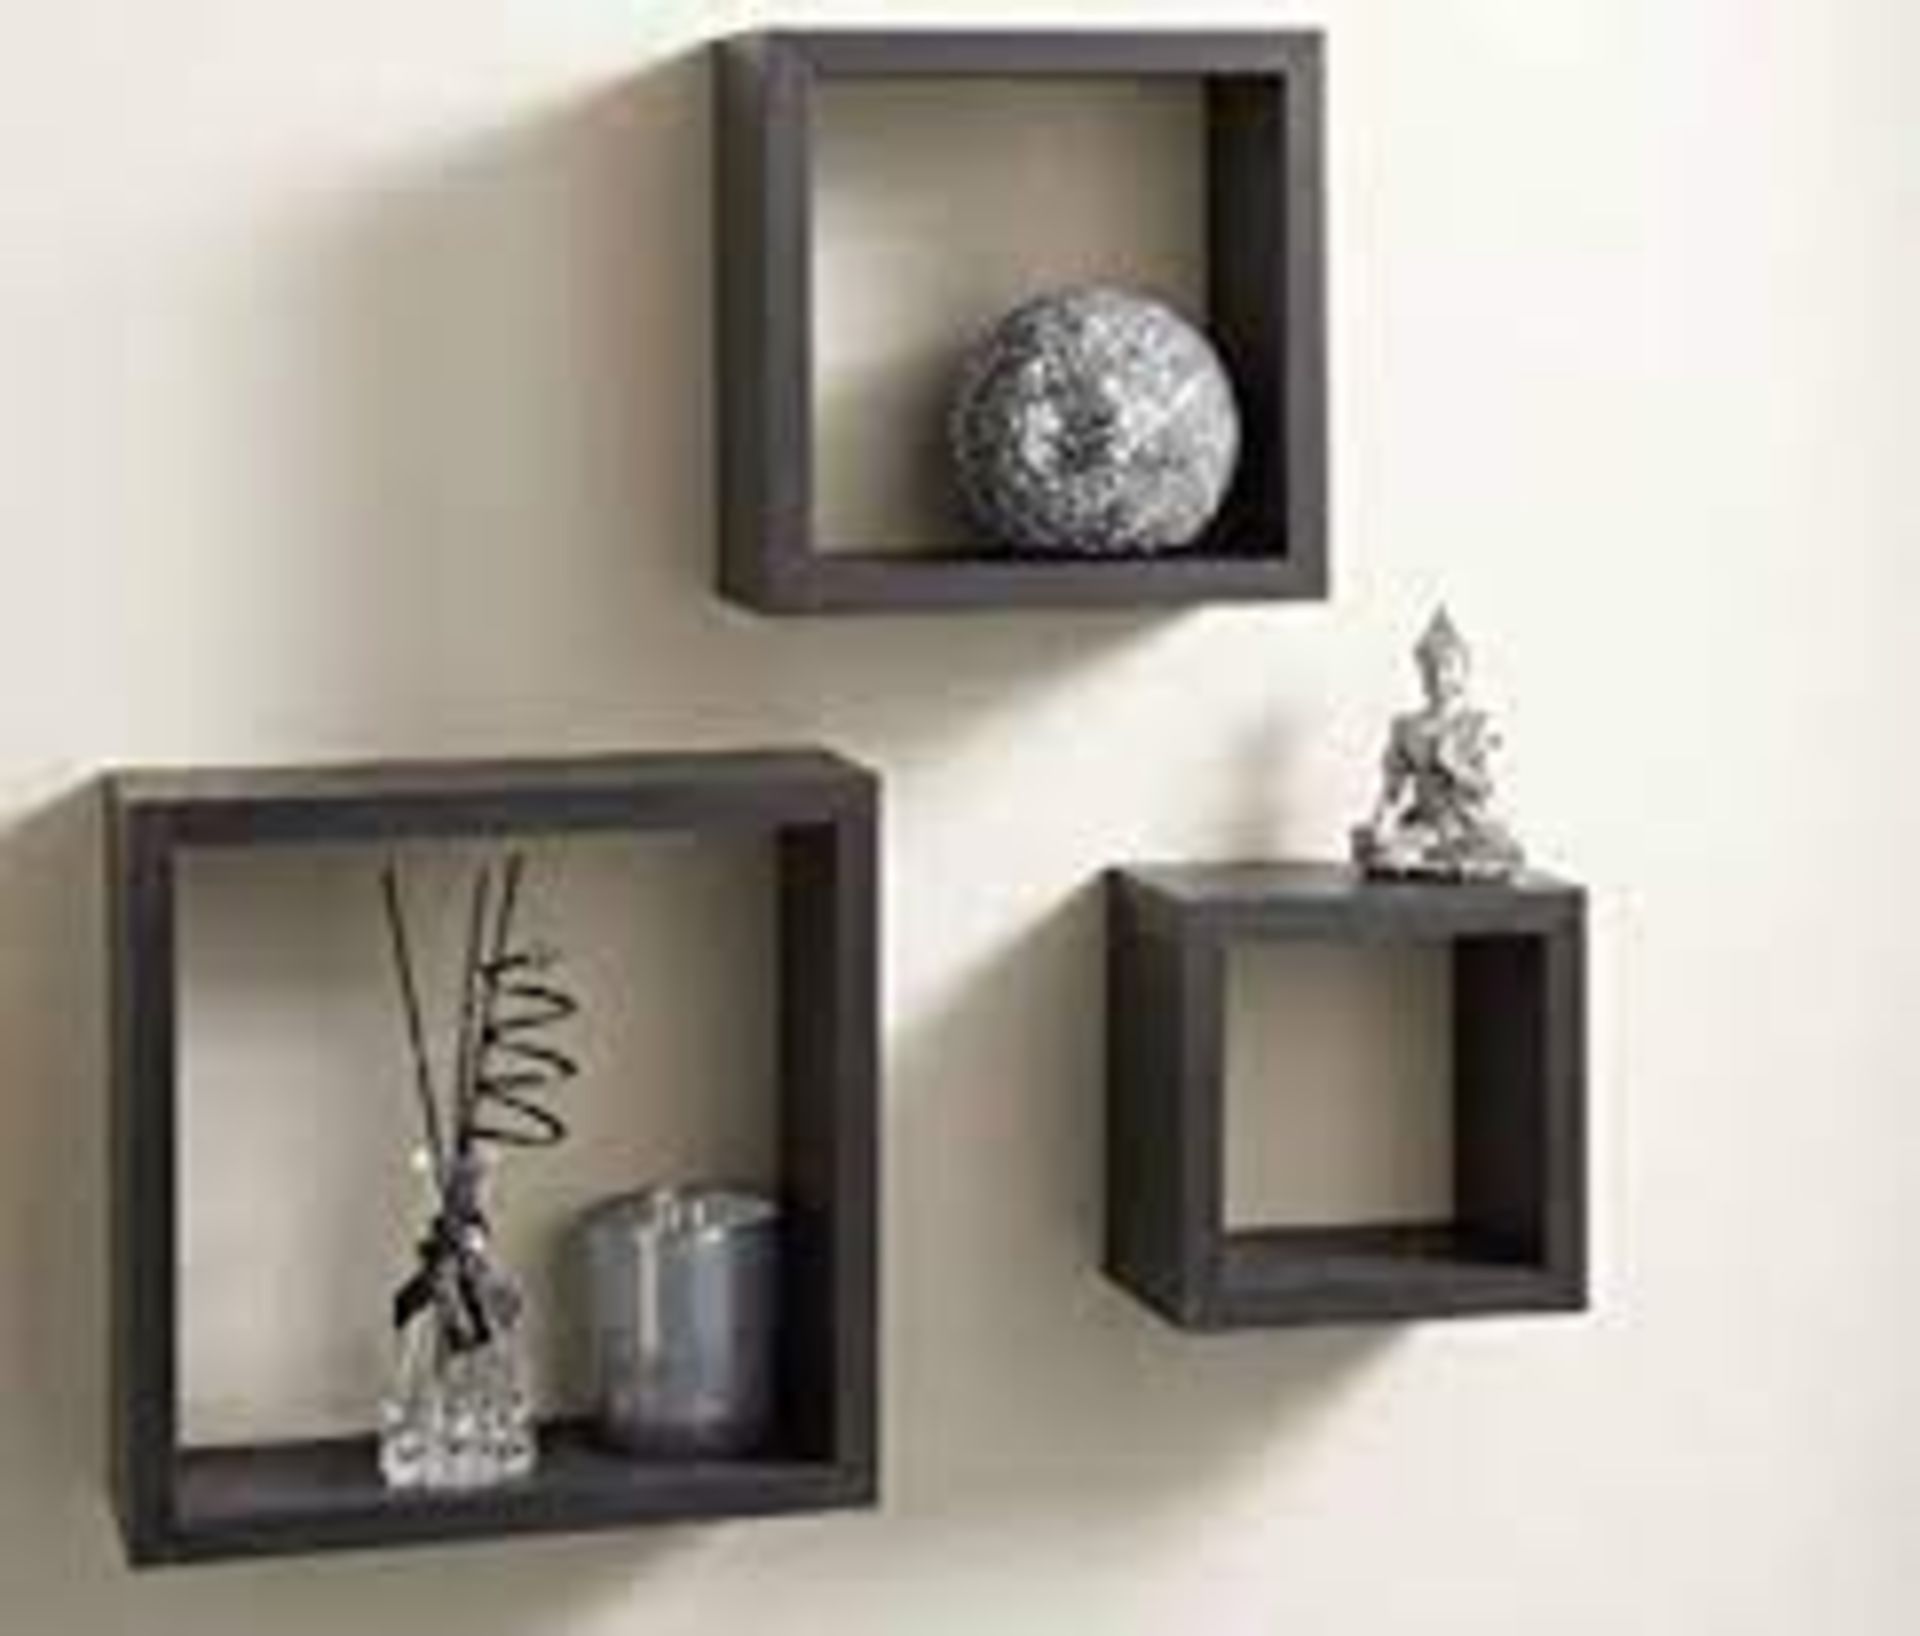 3 Floating Wall Cube Shelfs In Black